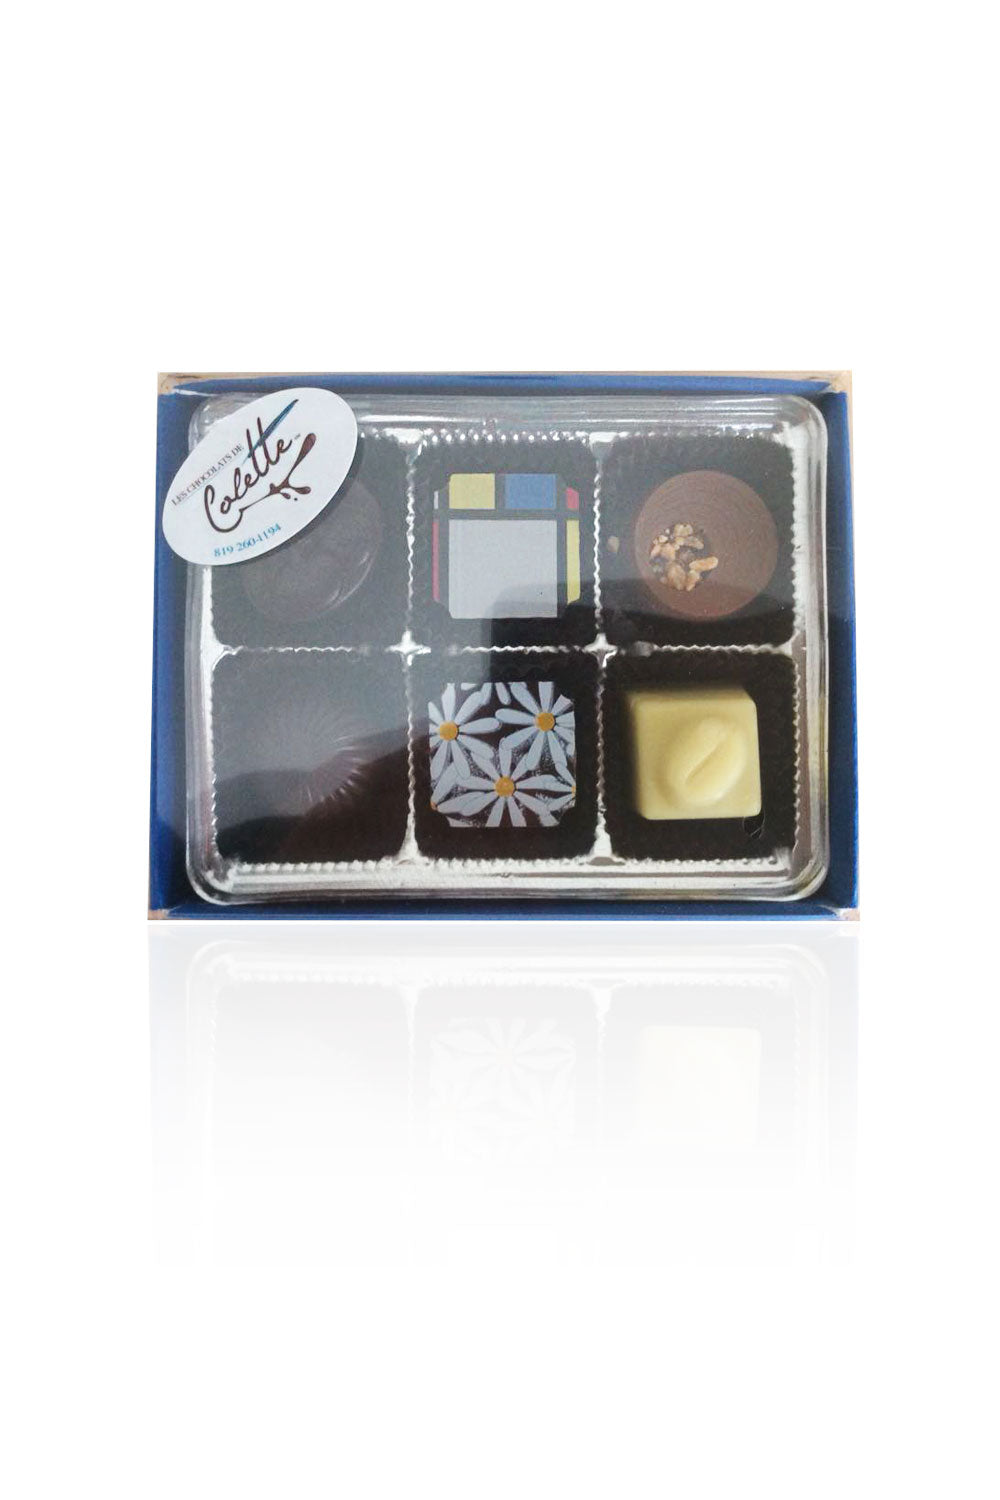 Assortiment de 6 chocolats, produit de qualité d'une compagnie victoriavilloise.  Les chocolats de Colette sont des chocolats belges fabriqués de façon artisanale et sont très appréciés en tout temps. Disponible en ligne, livraison à Victoriaville